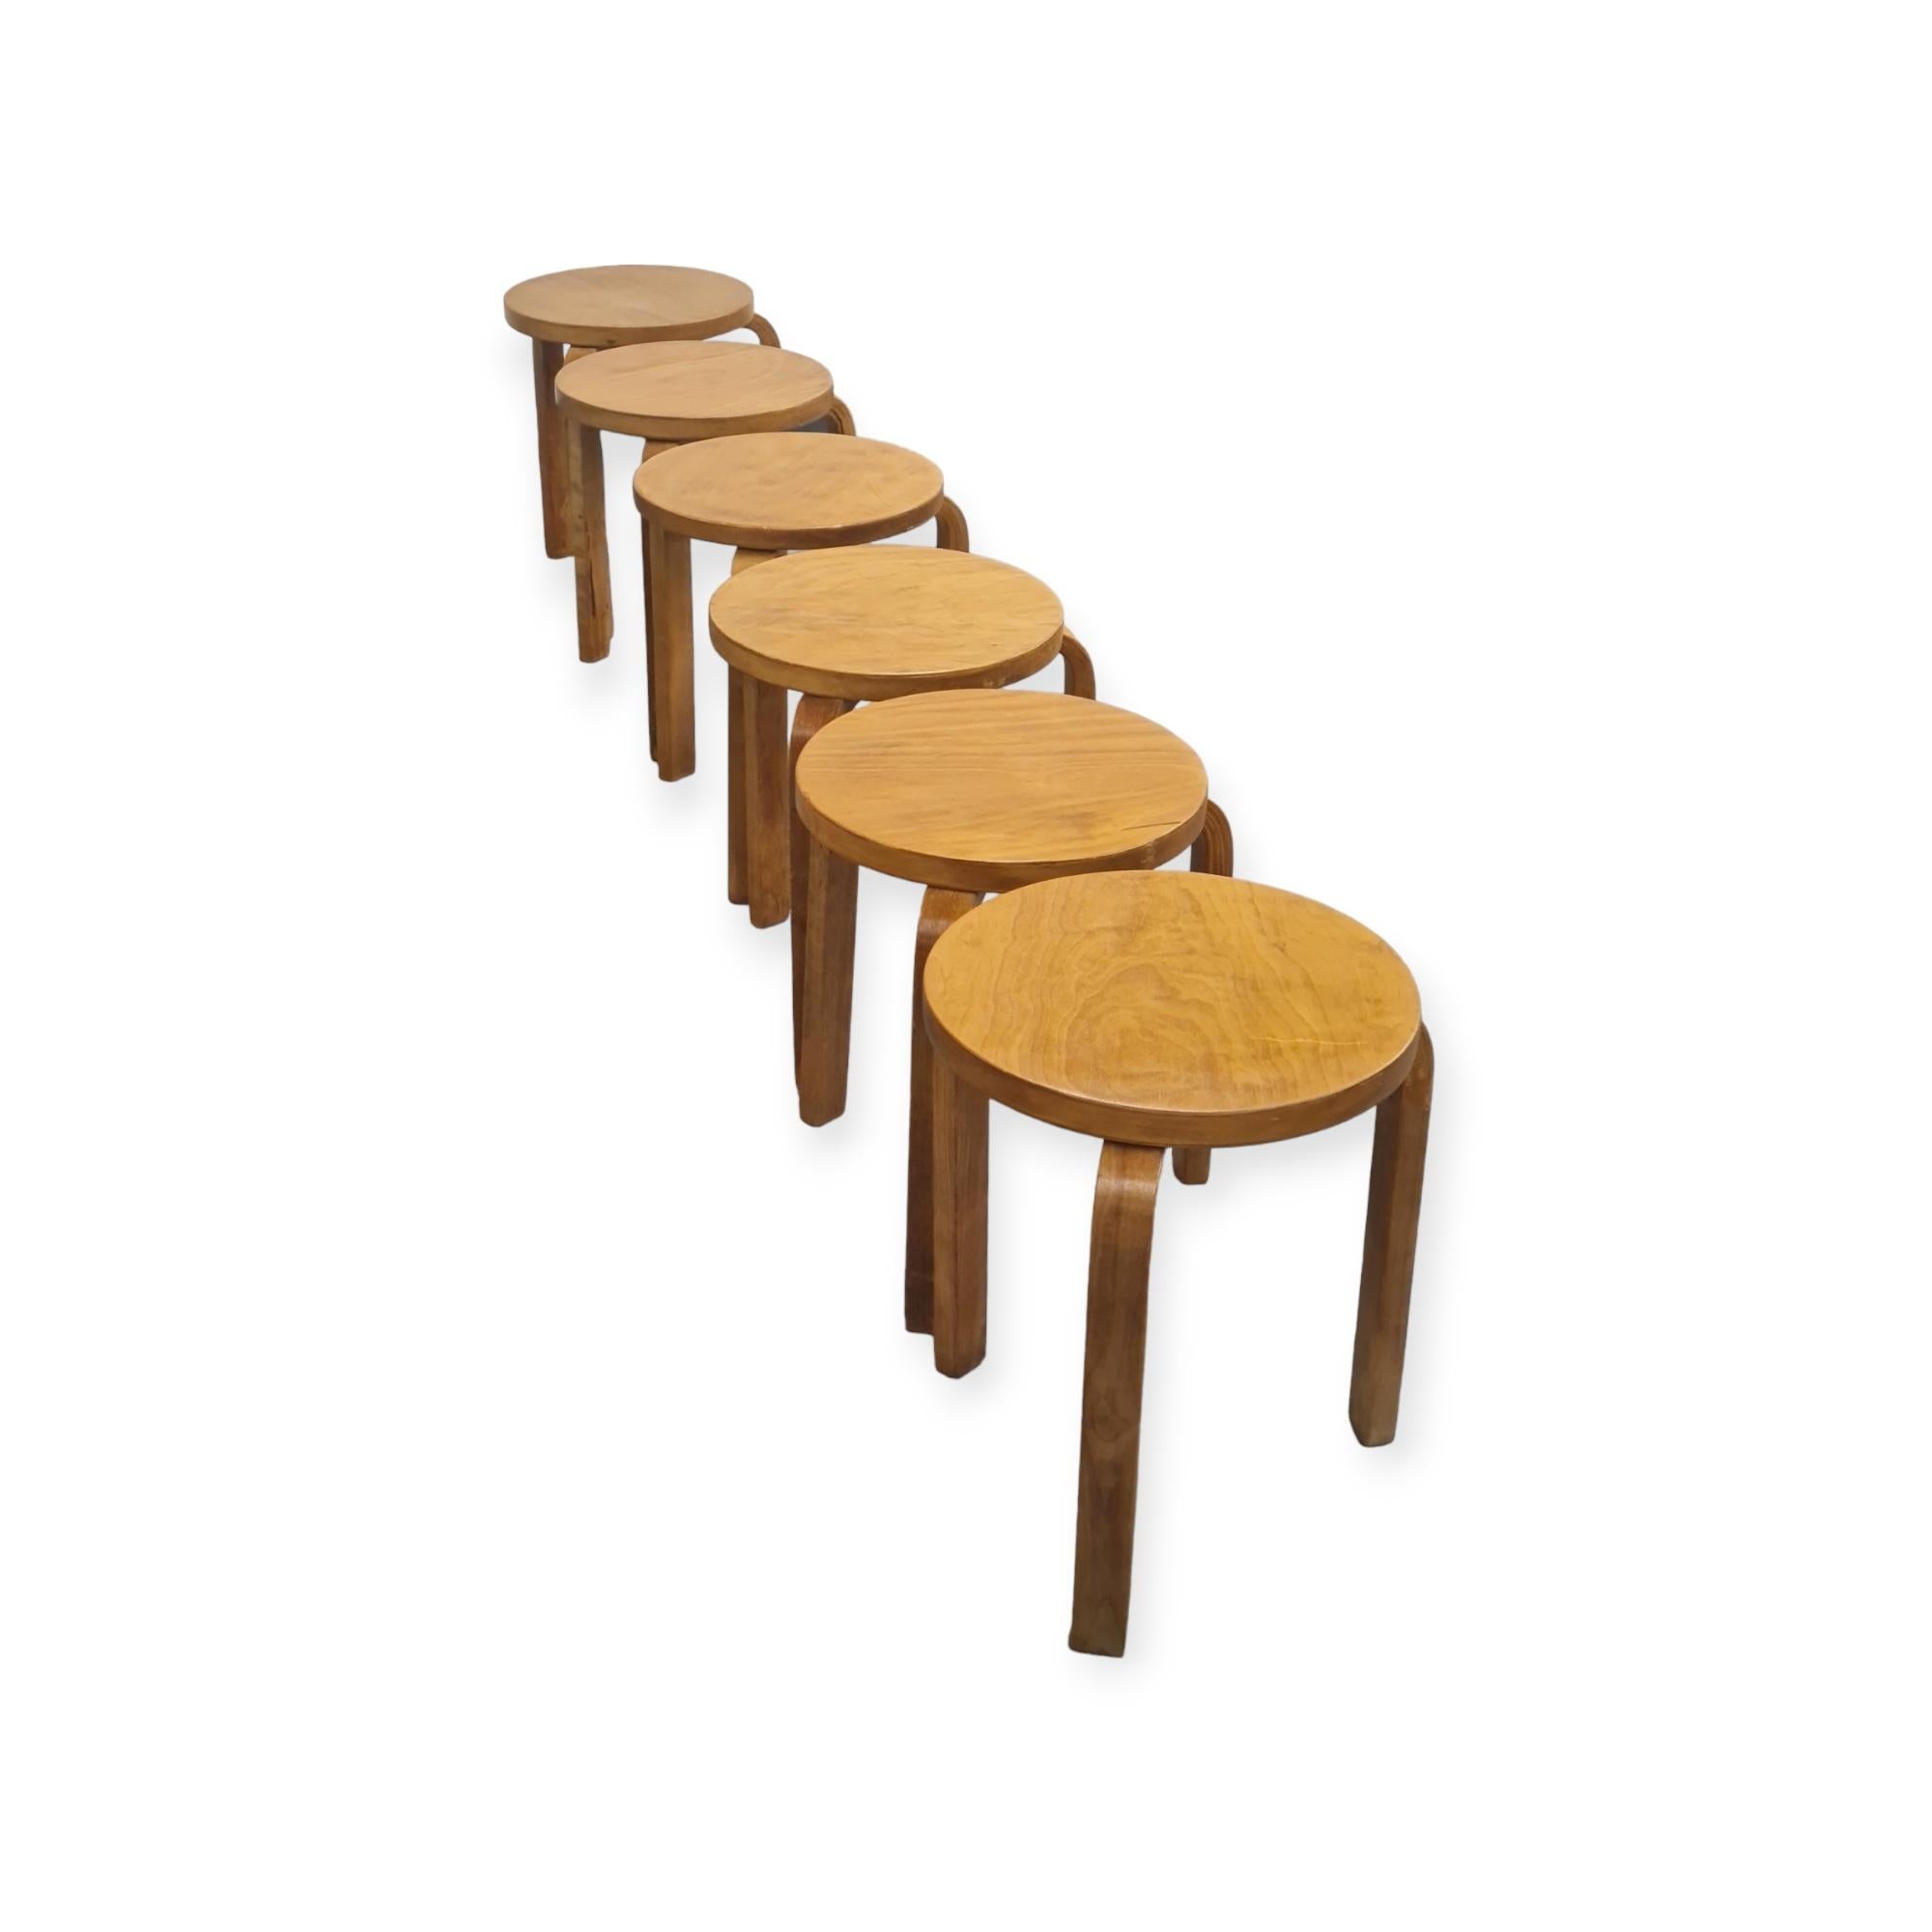 Diese sechs ikonischen Hocker von Alvar Aalto aus den 1930er Jahren sind schöne und platzsparende Möbelstücke von zeitlosem Design. Die Beine werden ohne komplizierte Verbindungselemente direkt an der Unterseite des Rundsitzes montiert. Die Hocker